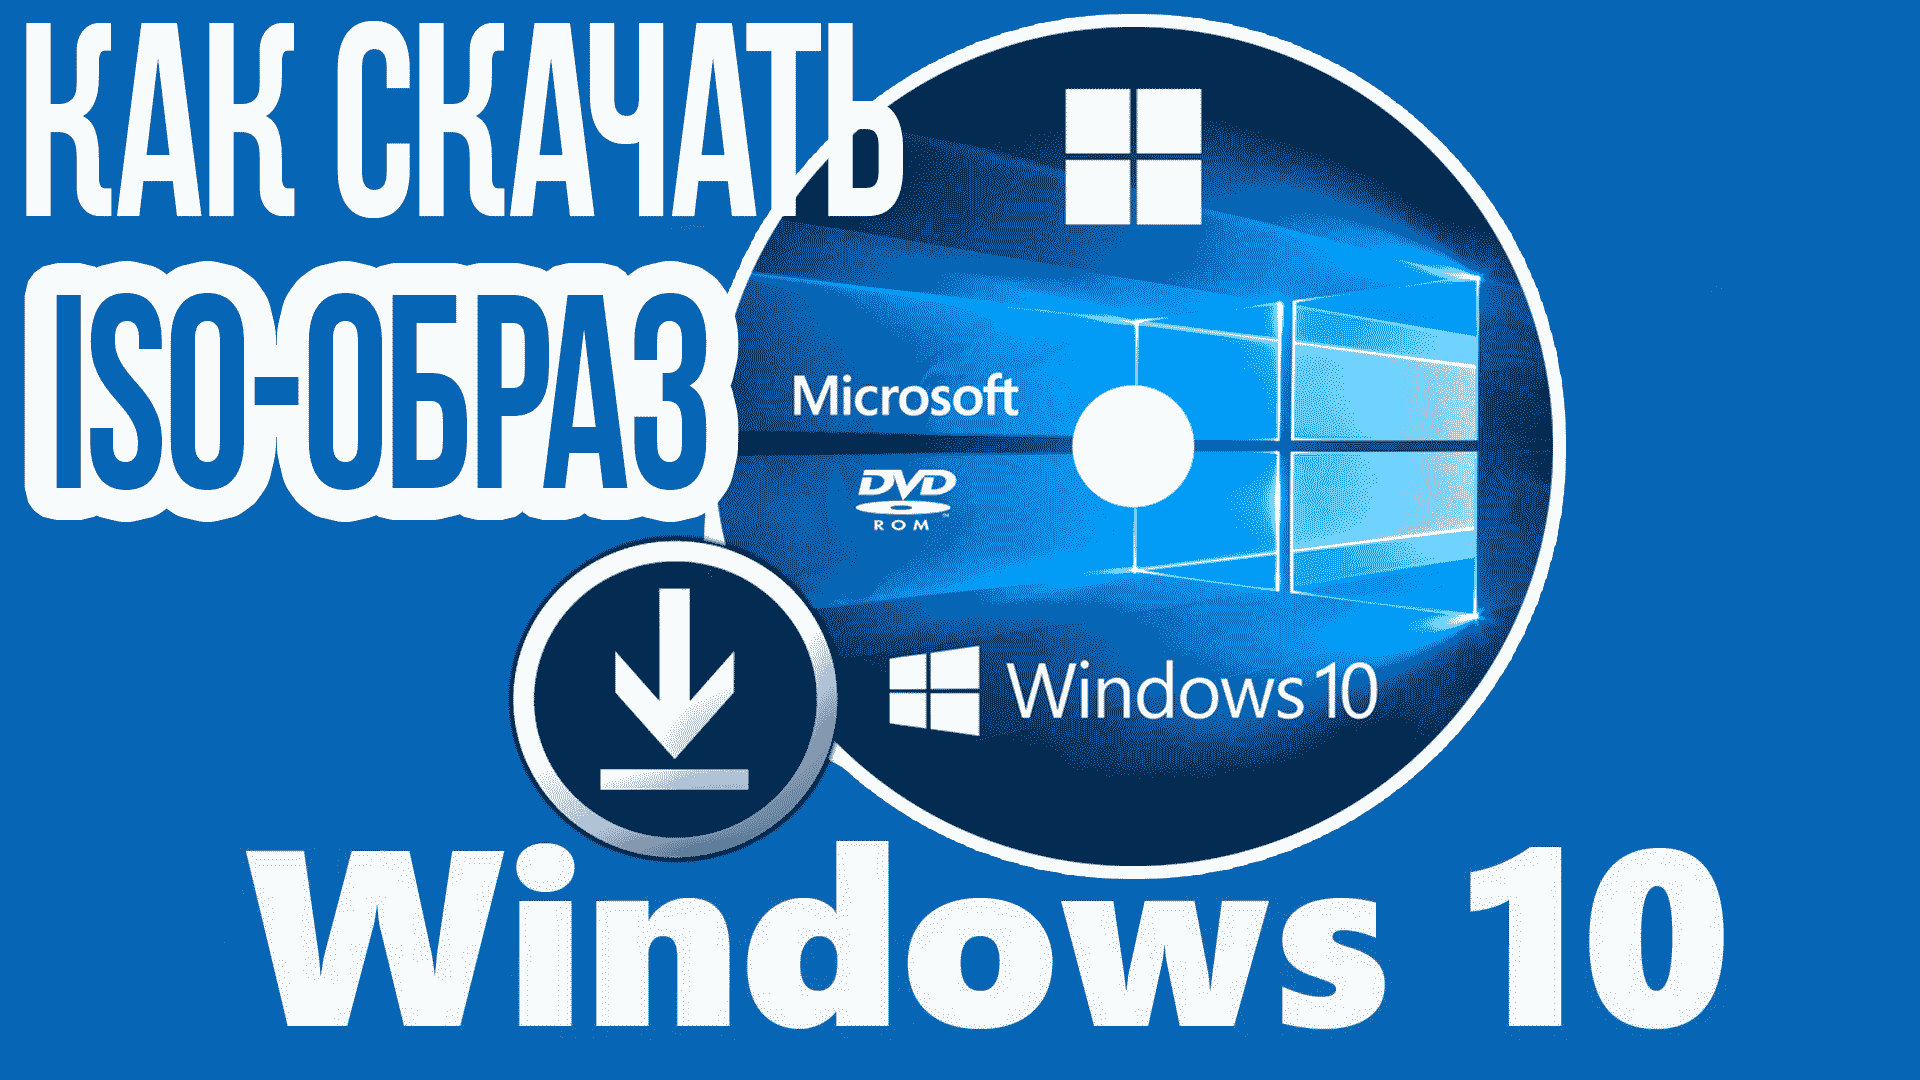 Как СКАЧАТЬ ОБРАЗ последней версии Windows 10 с официального сайта и записать на Диск или Флешку